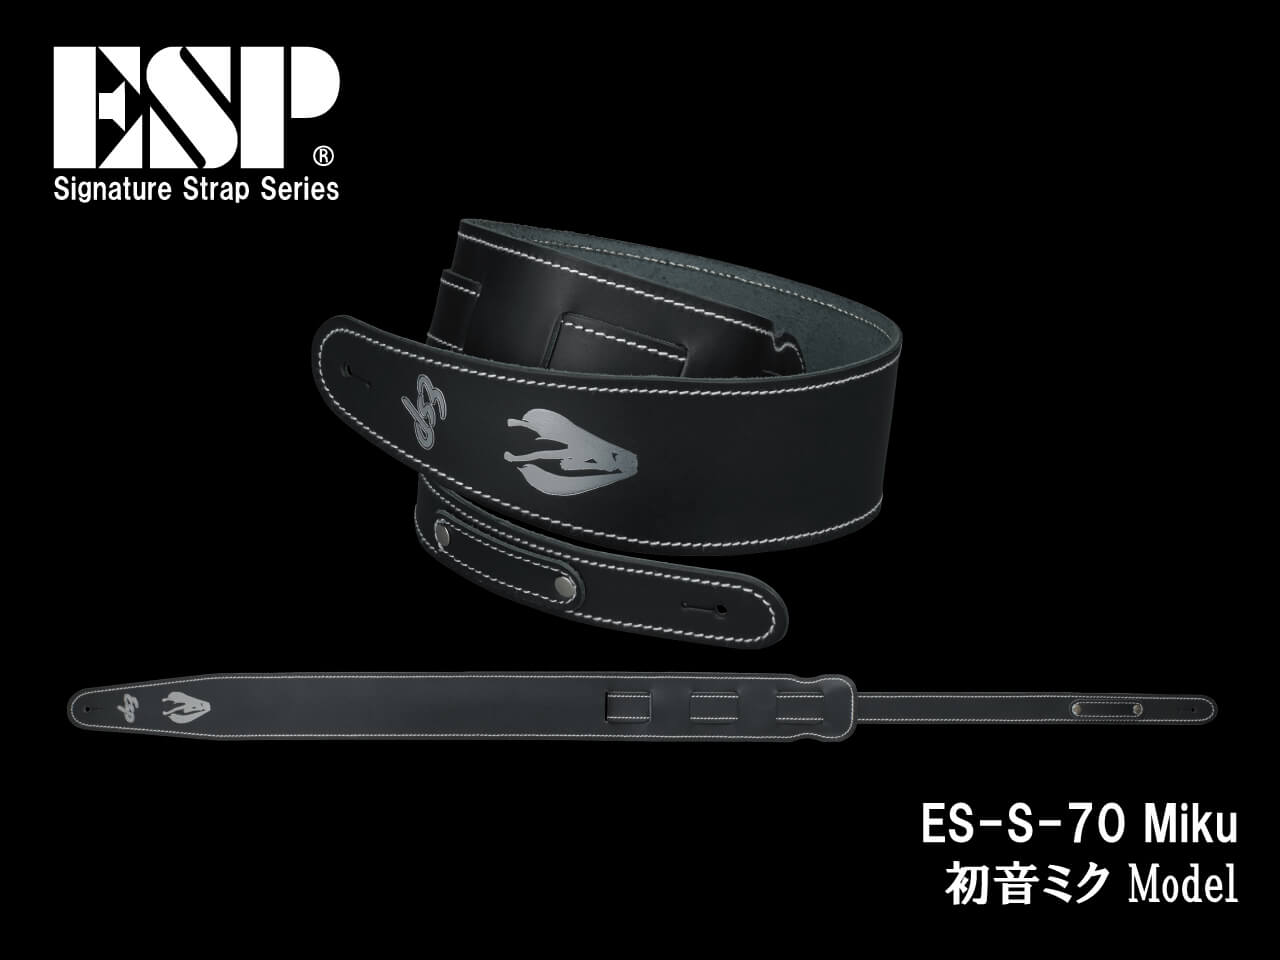 ESP(イーエスピー) Signature Strap Series ES-S-70 Miku (初音ミク モデル)